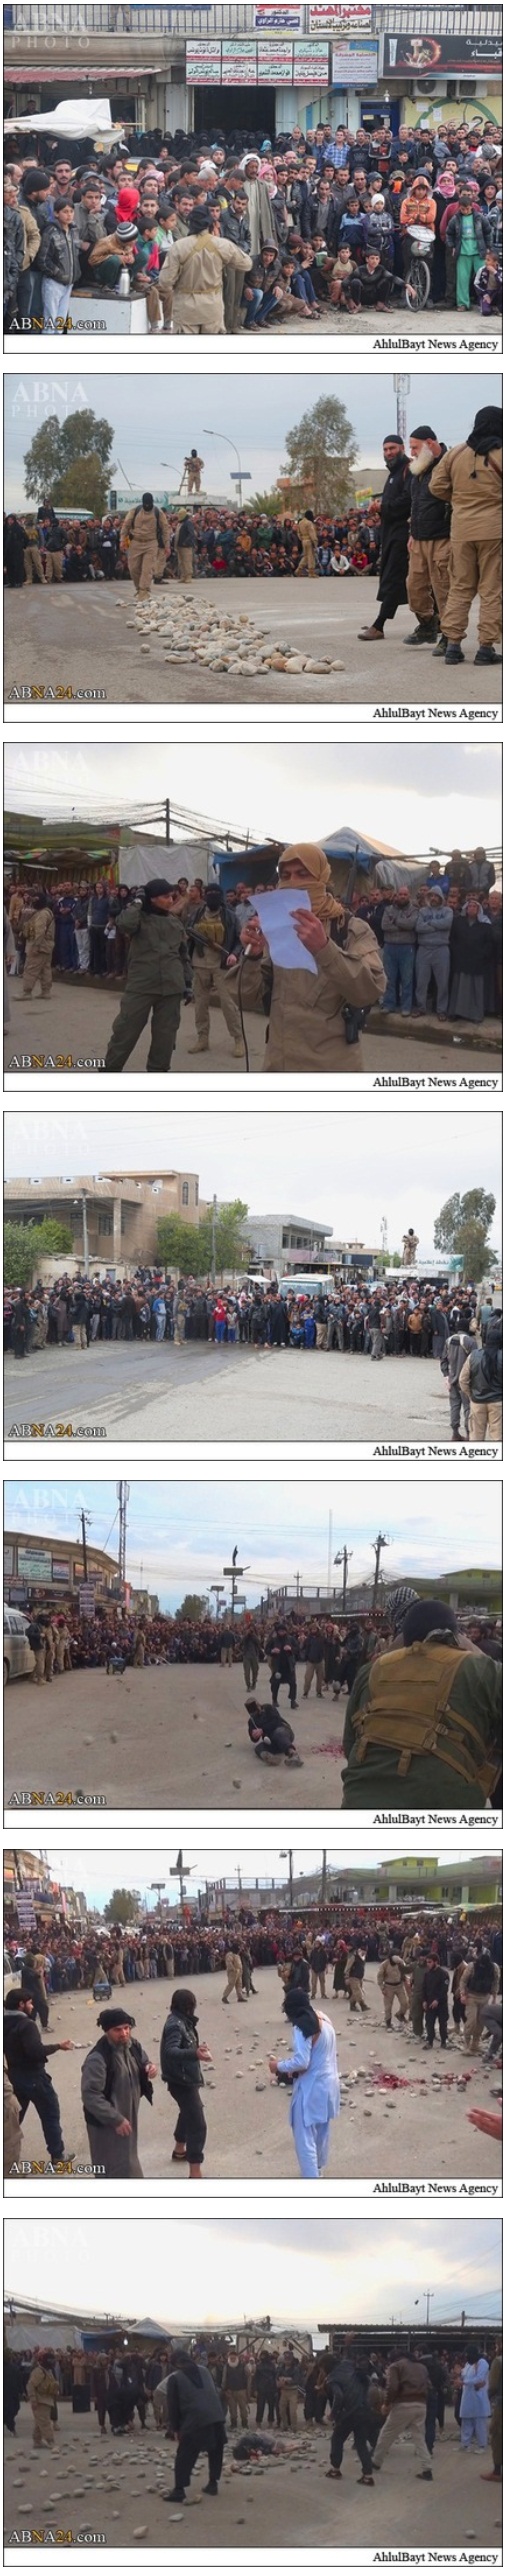 تصاویر : سنگسار شهروند عراقی توسط داعش